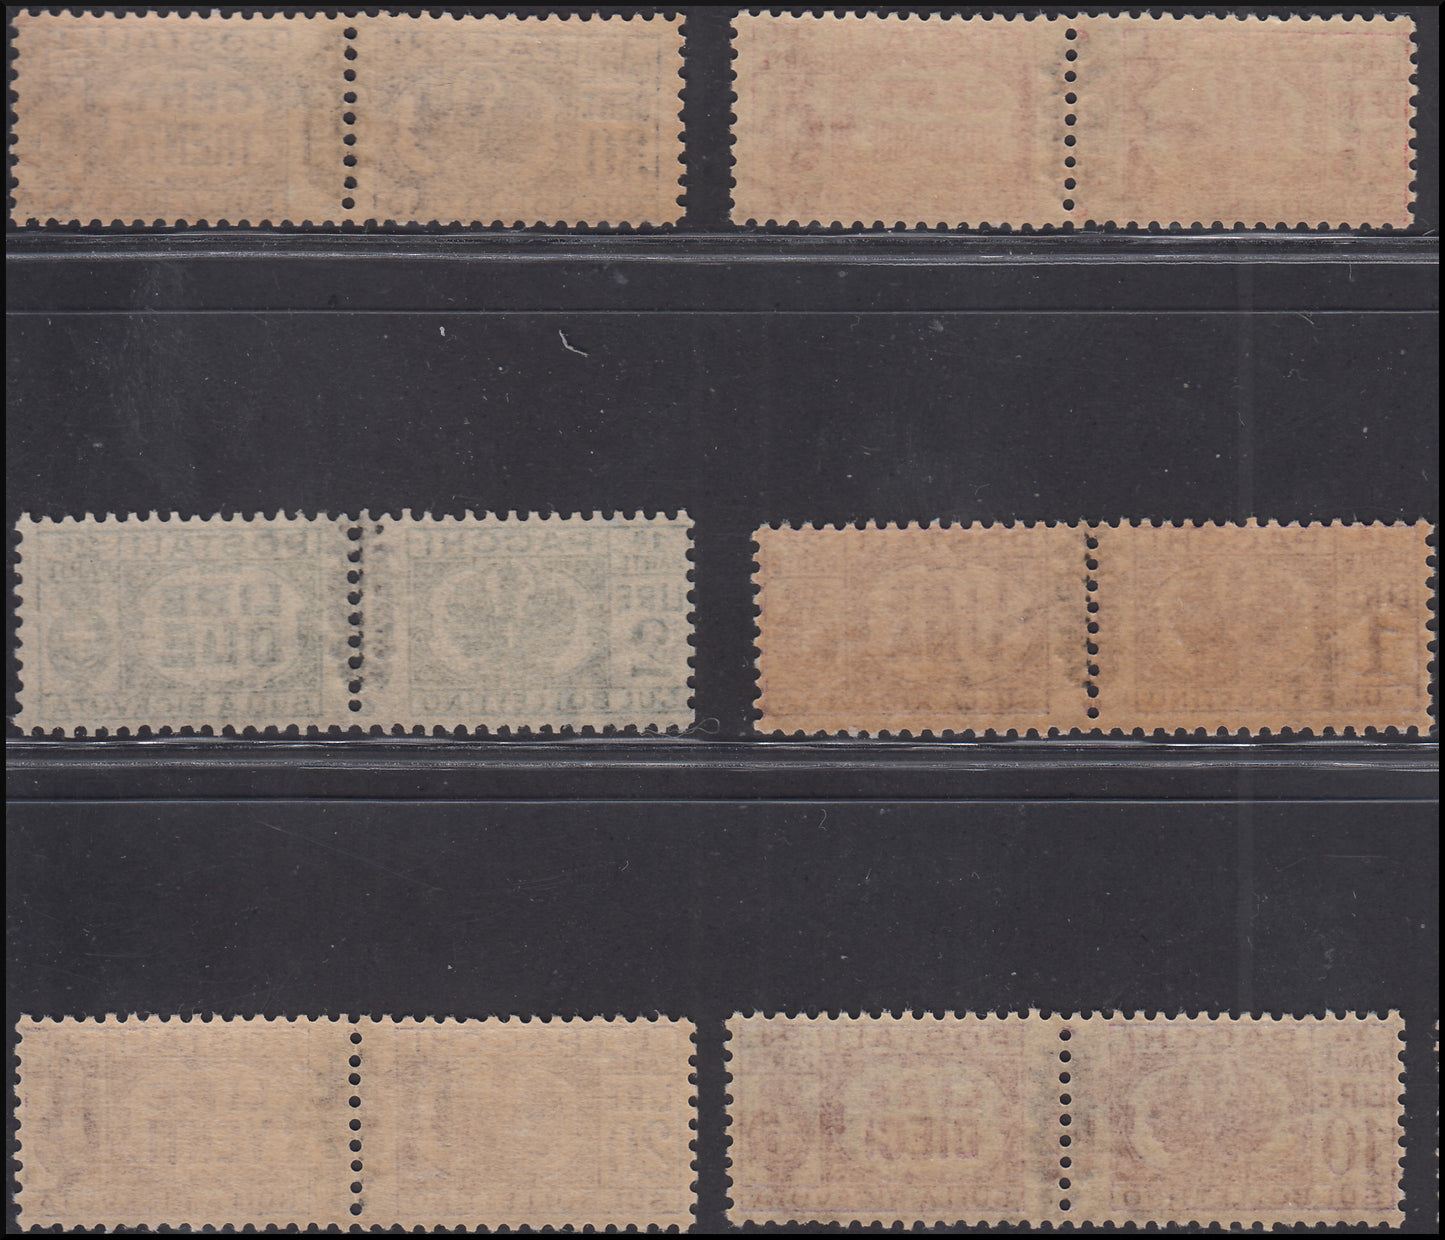 Luogotenenza pacchi postali con fregio nero sui fasci, serie completa di 12 valori (48/59) nuova **